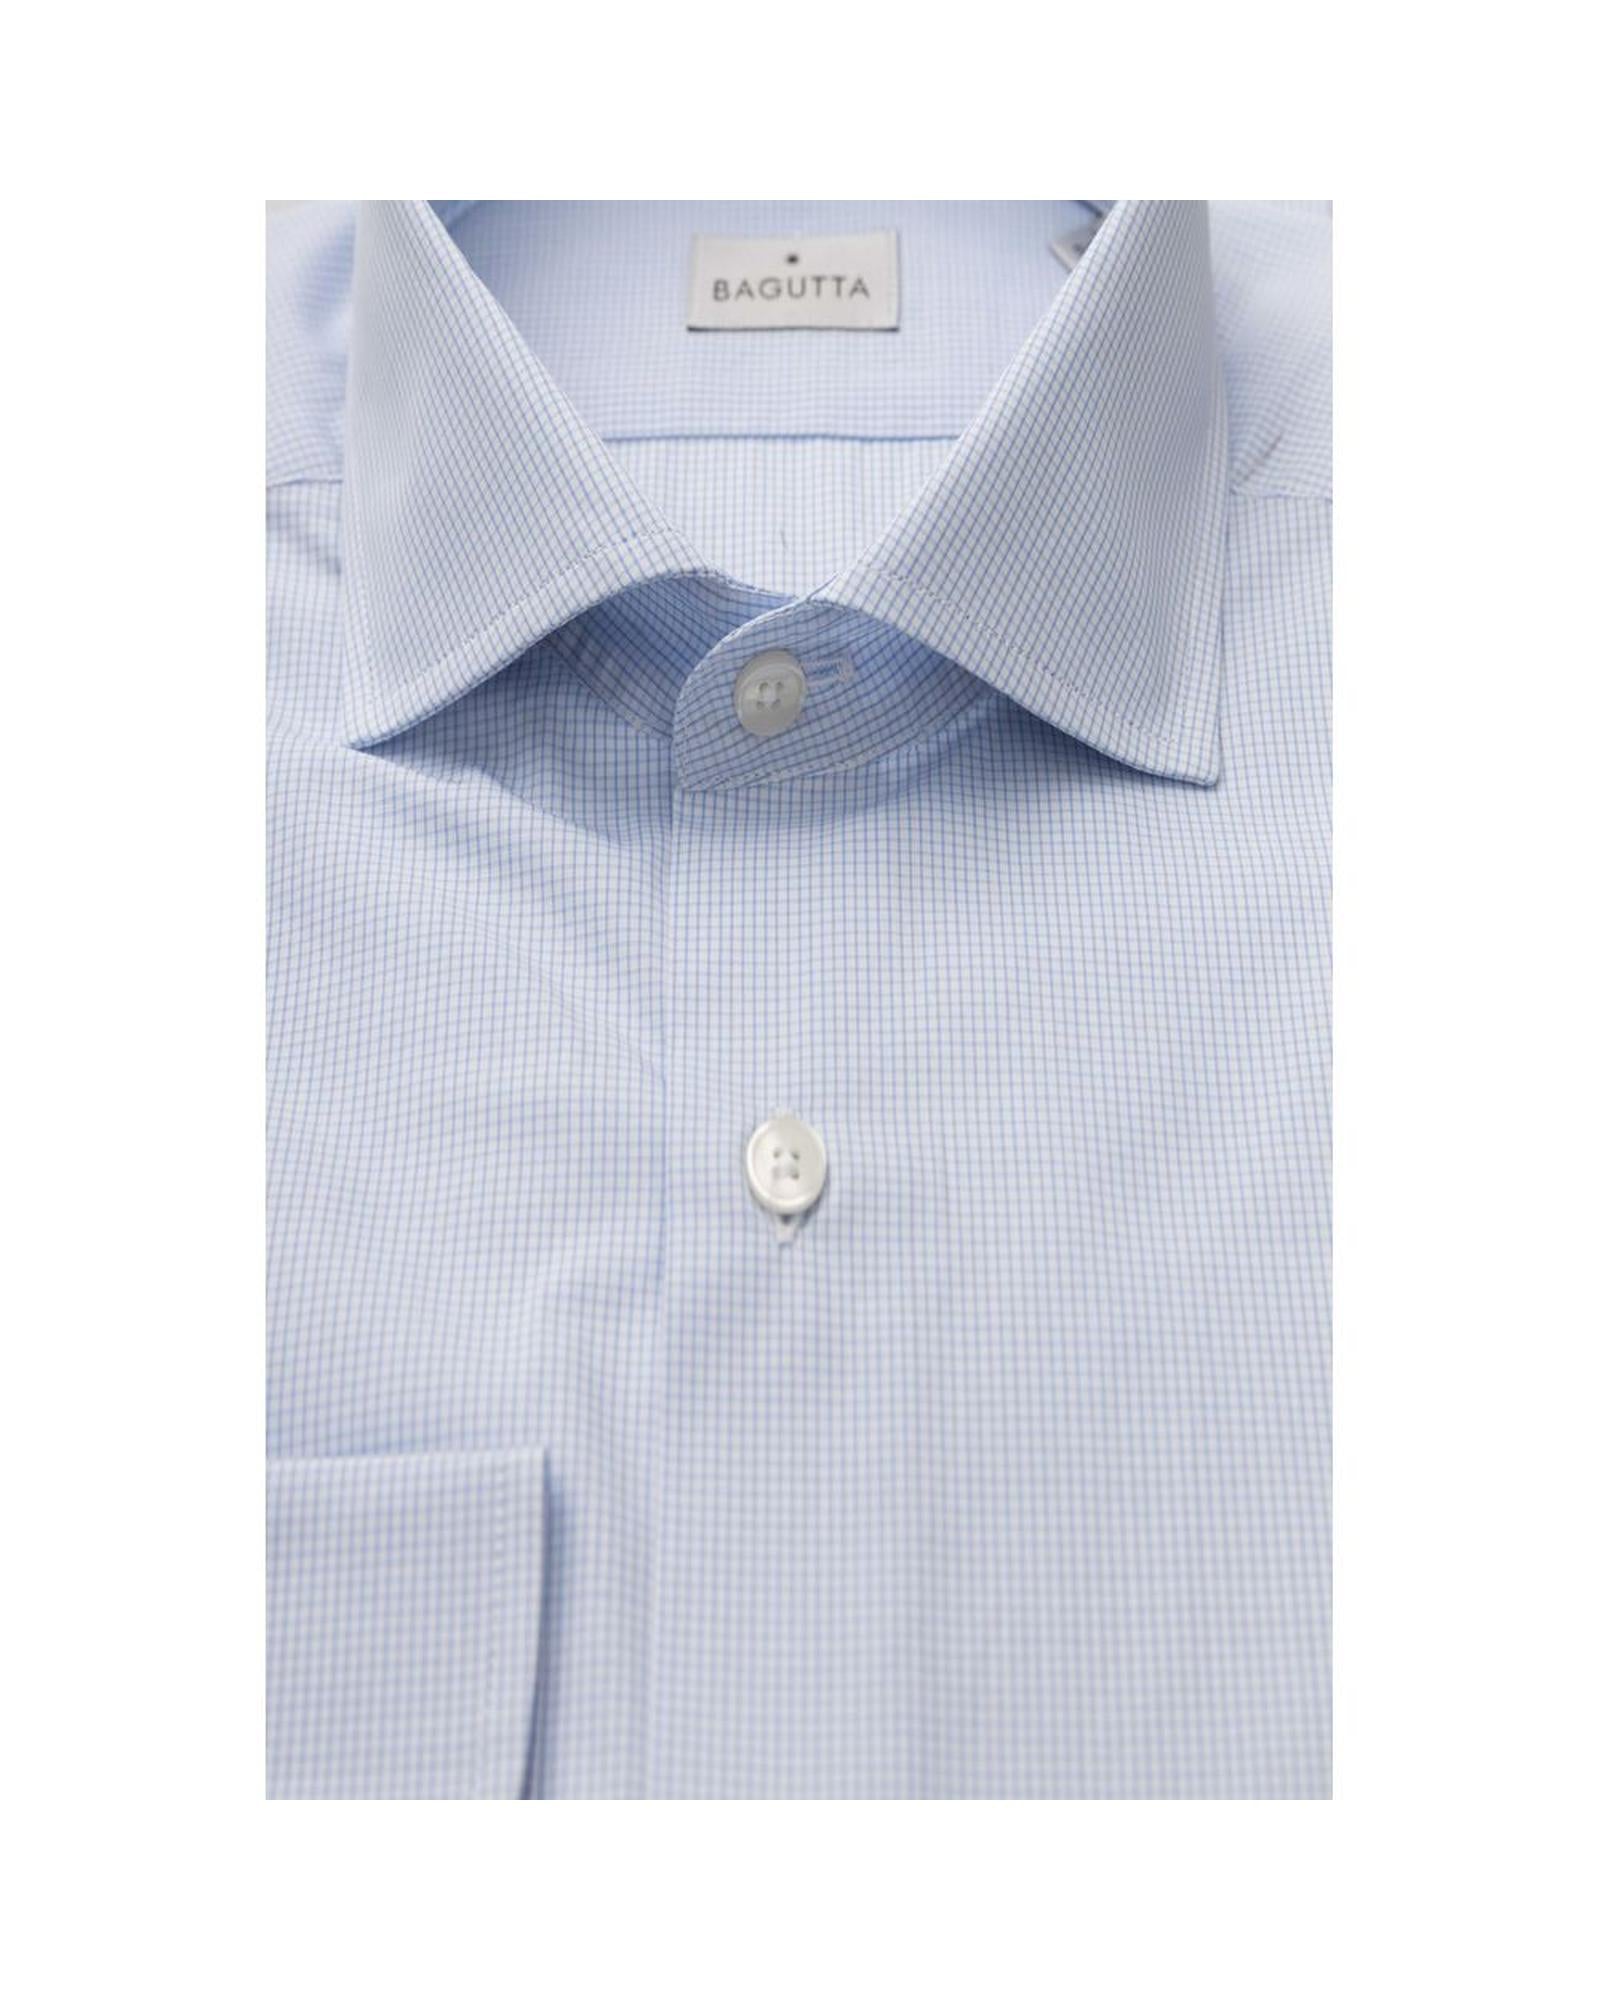 Men's Light Blue Cotton Shirt - 2XL